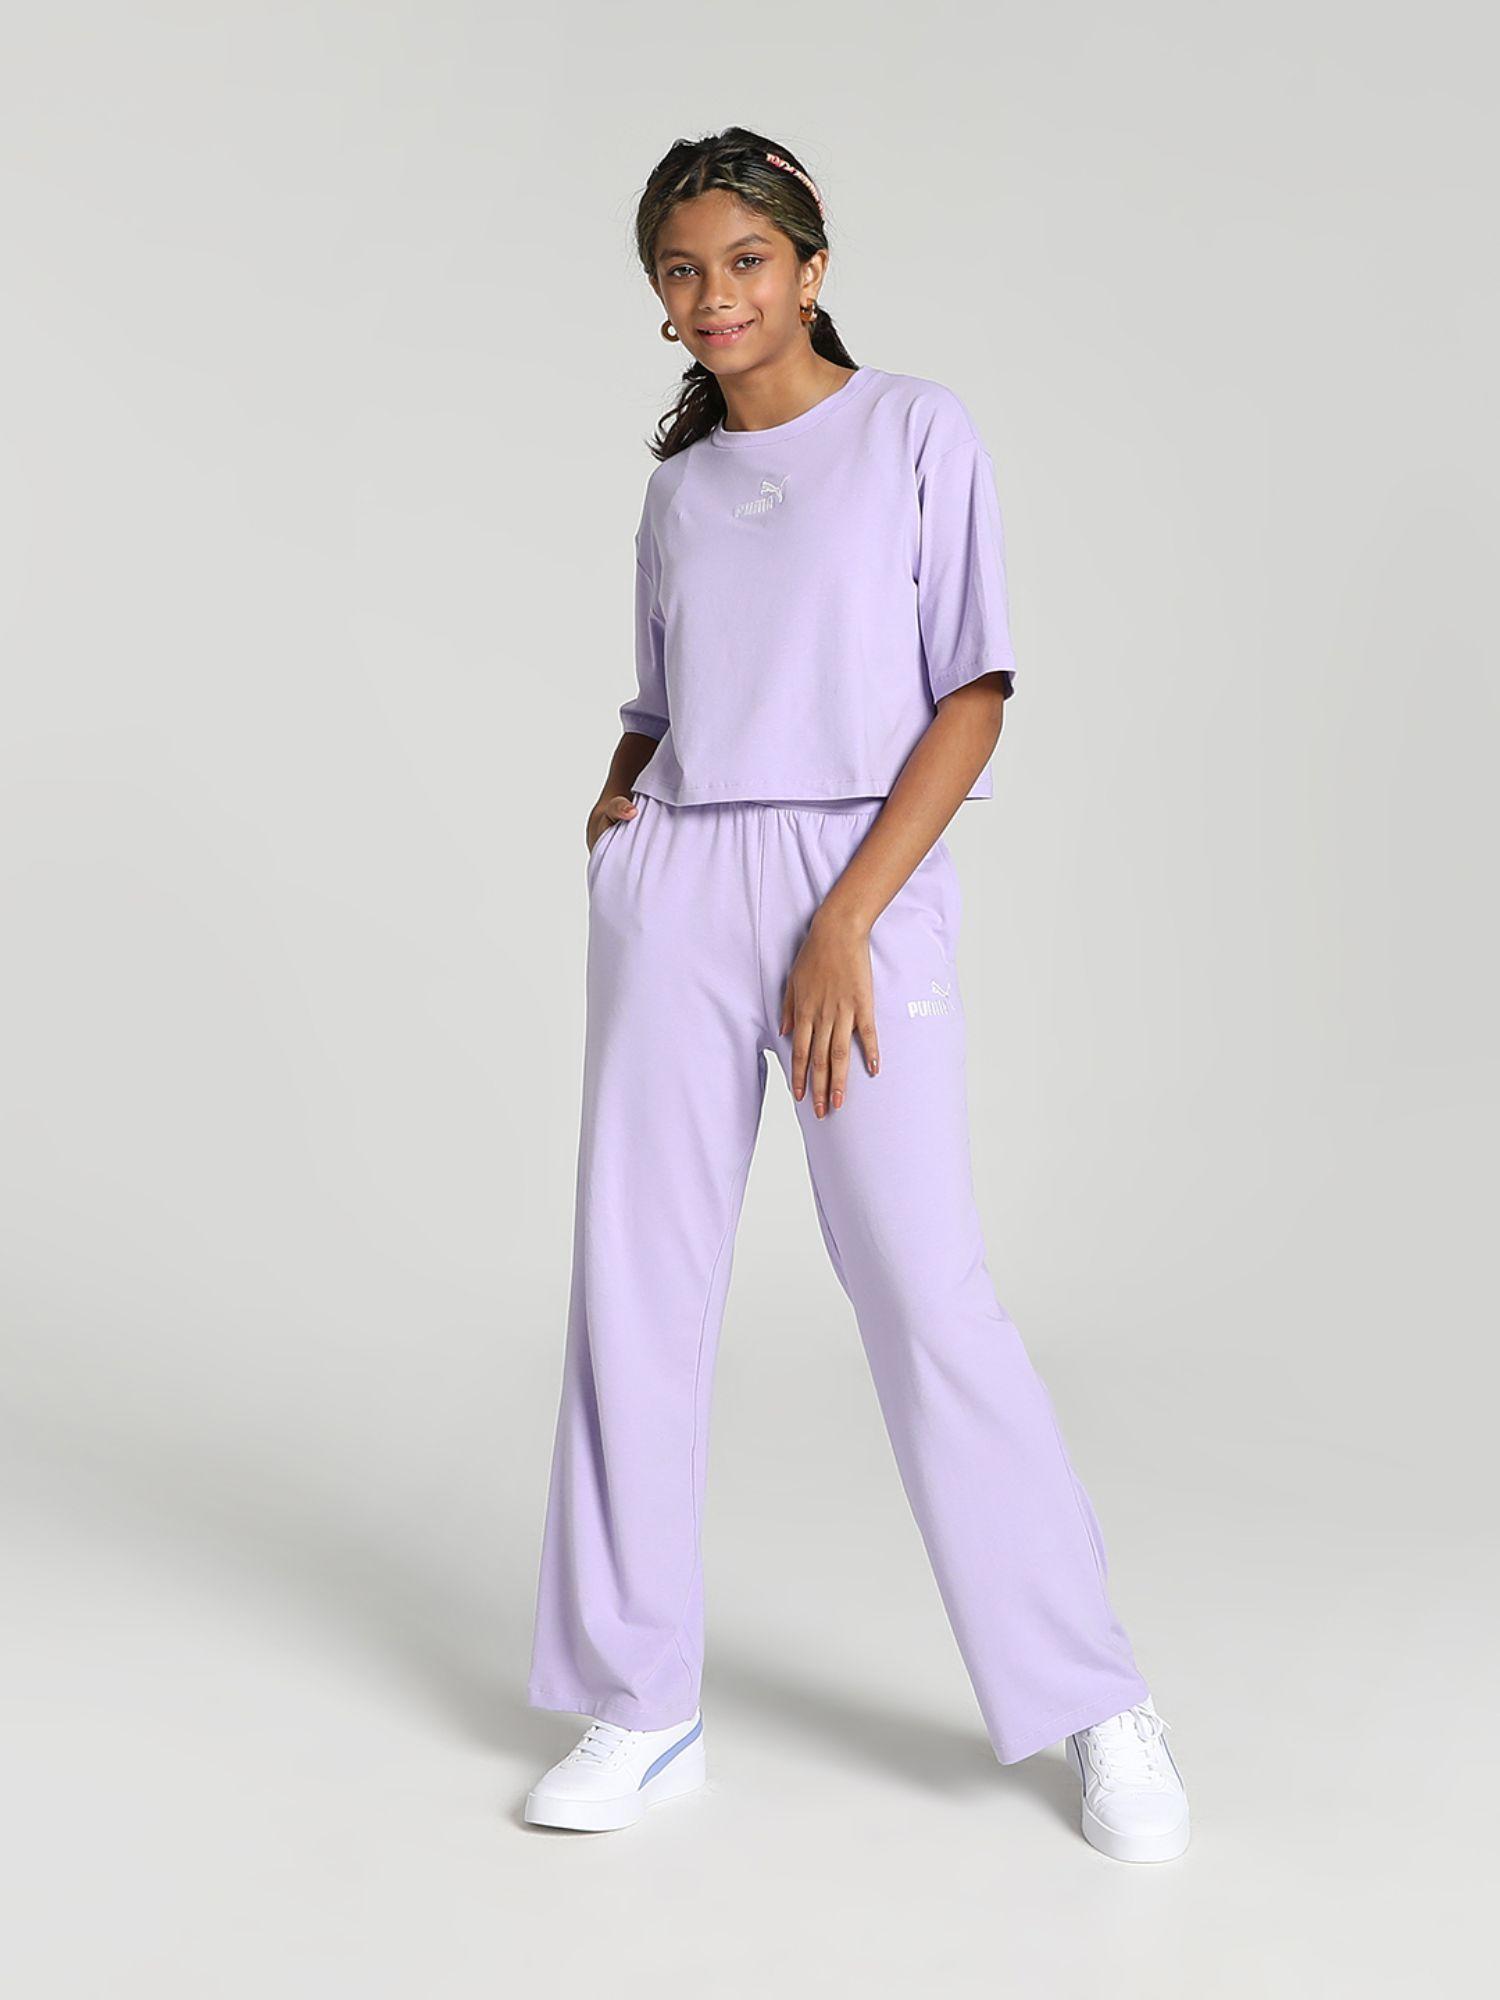 co-ord-girls-purple-jog-suit